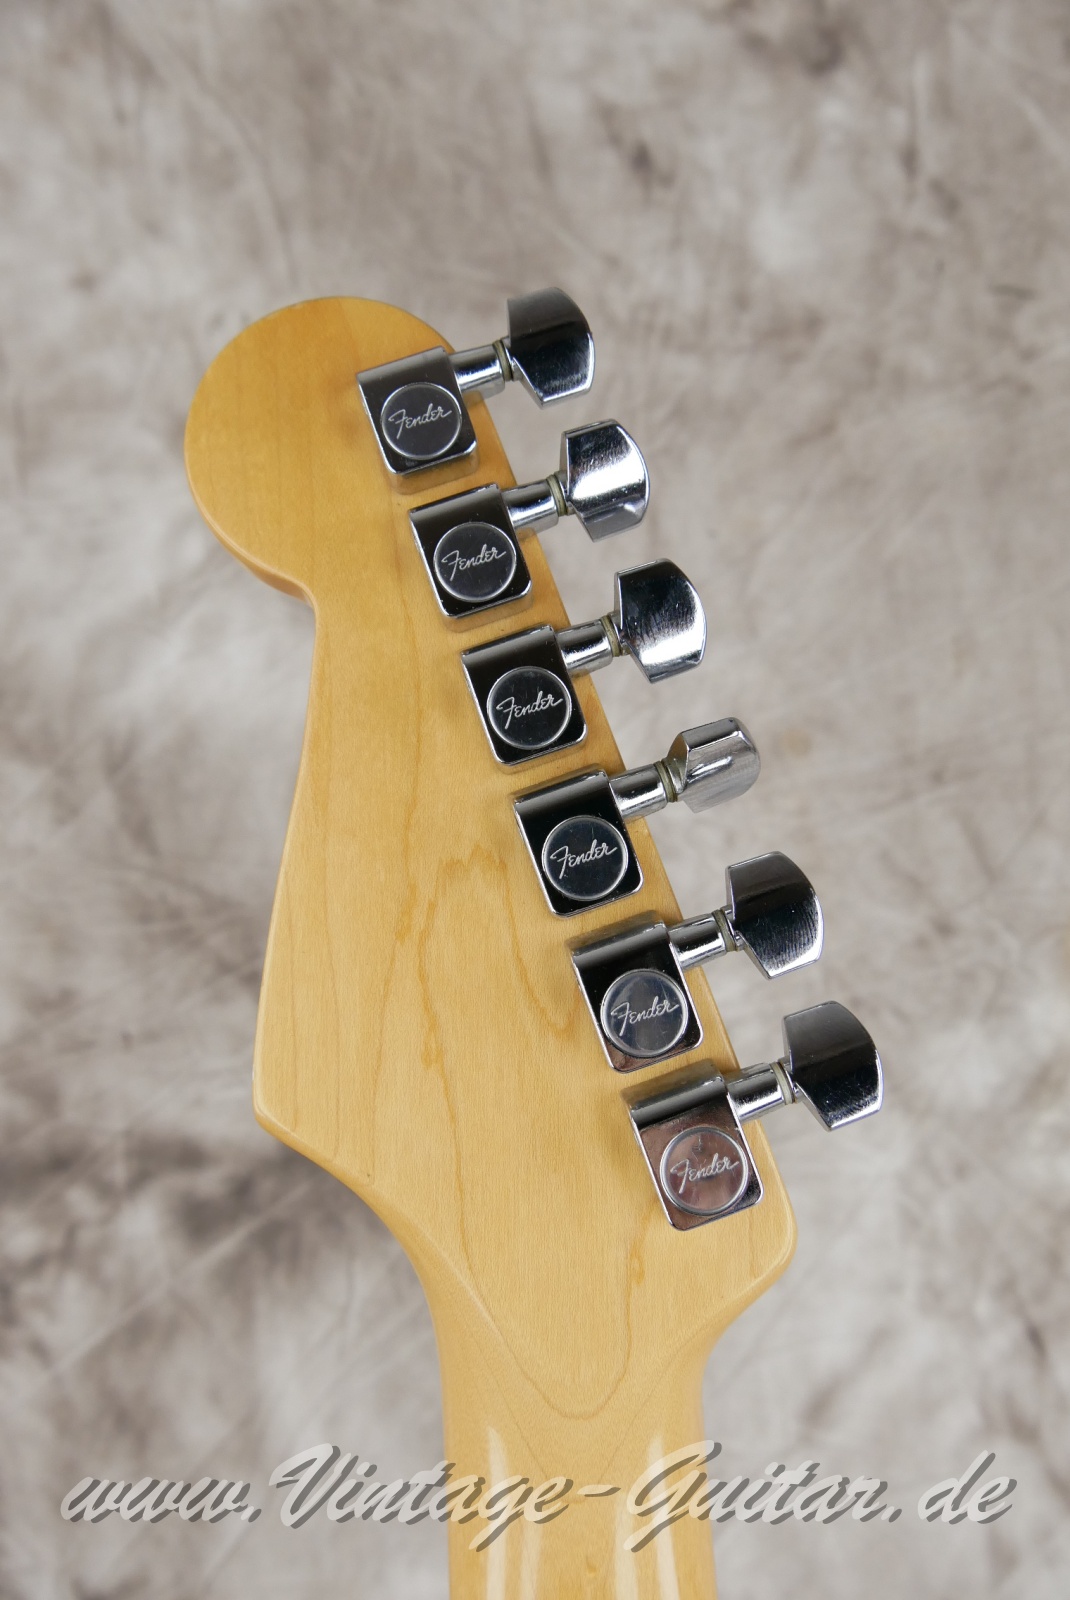 Fender-Stratocaster-American-Standard-1987-black-010.JPG